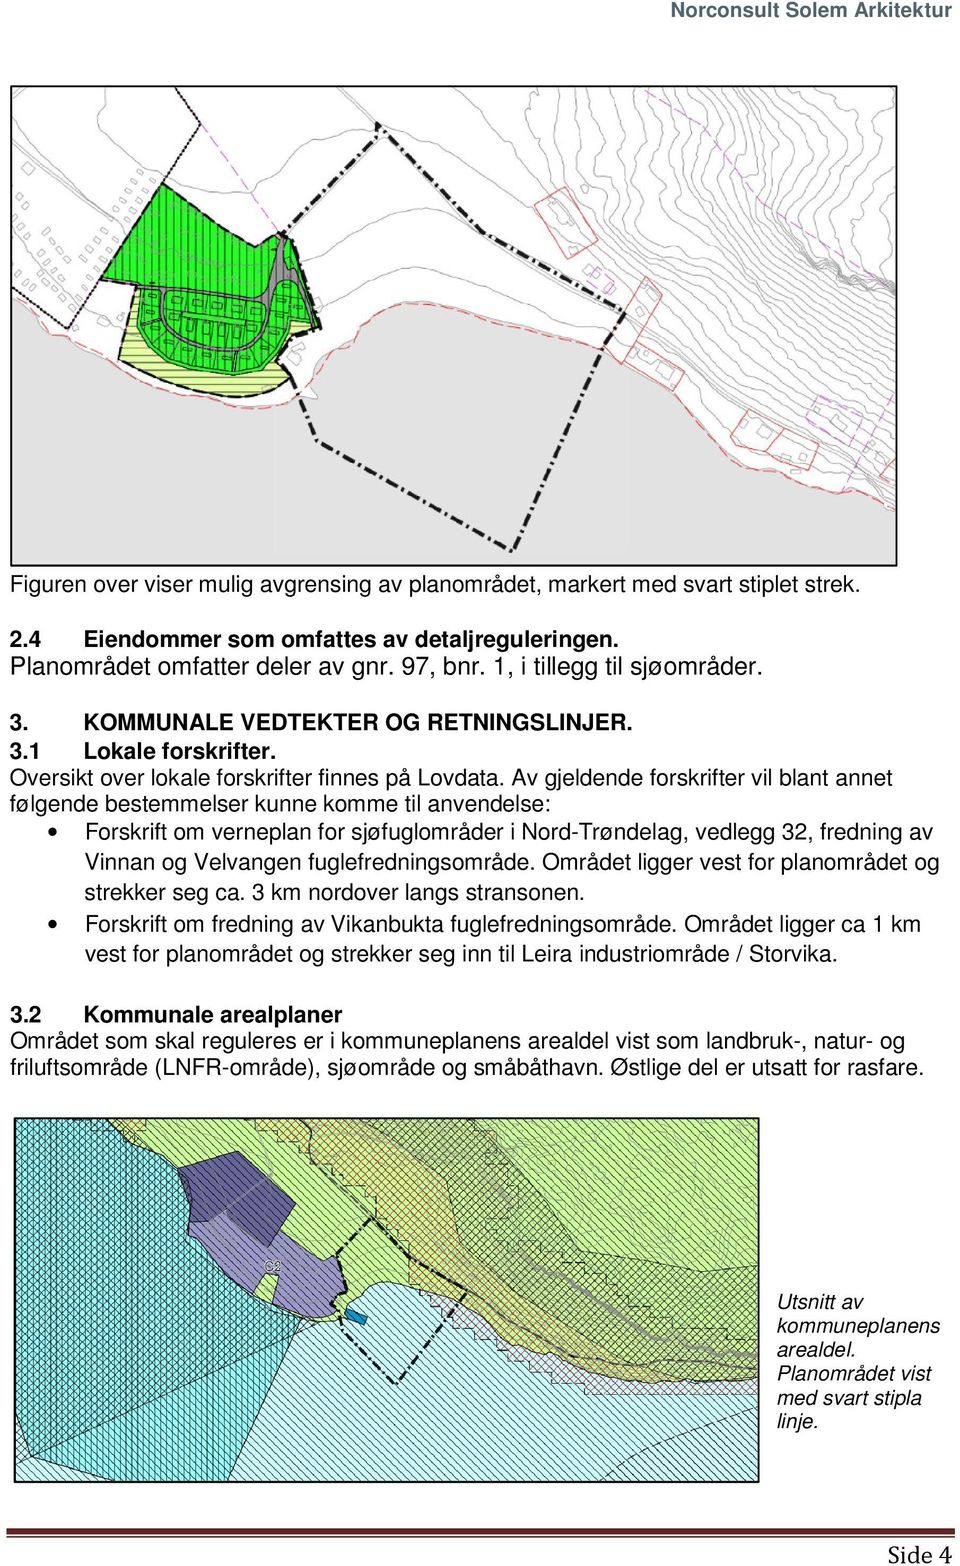 Av gjeldende forskrifter vil blant annet følgende bestemmelser kunne komme til anvendelse: Forskrift om verneplan for sjøfuglområder i Nord-Trøndelag, vedlegg 32, fredning av Vinnan og Velvangen